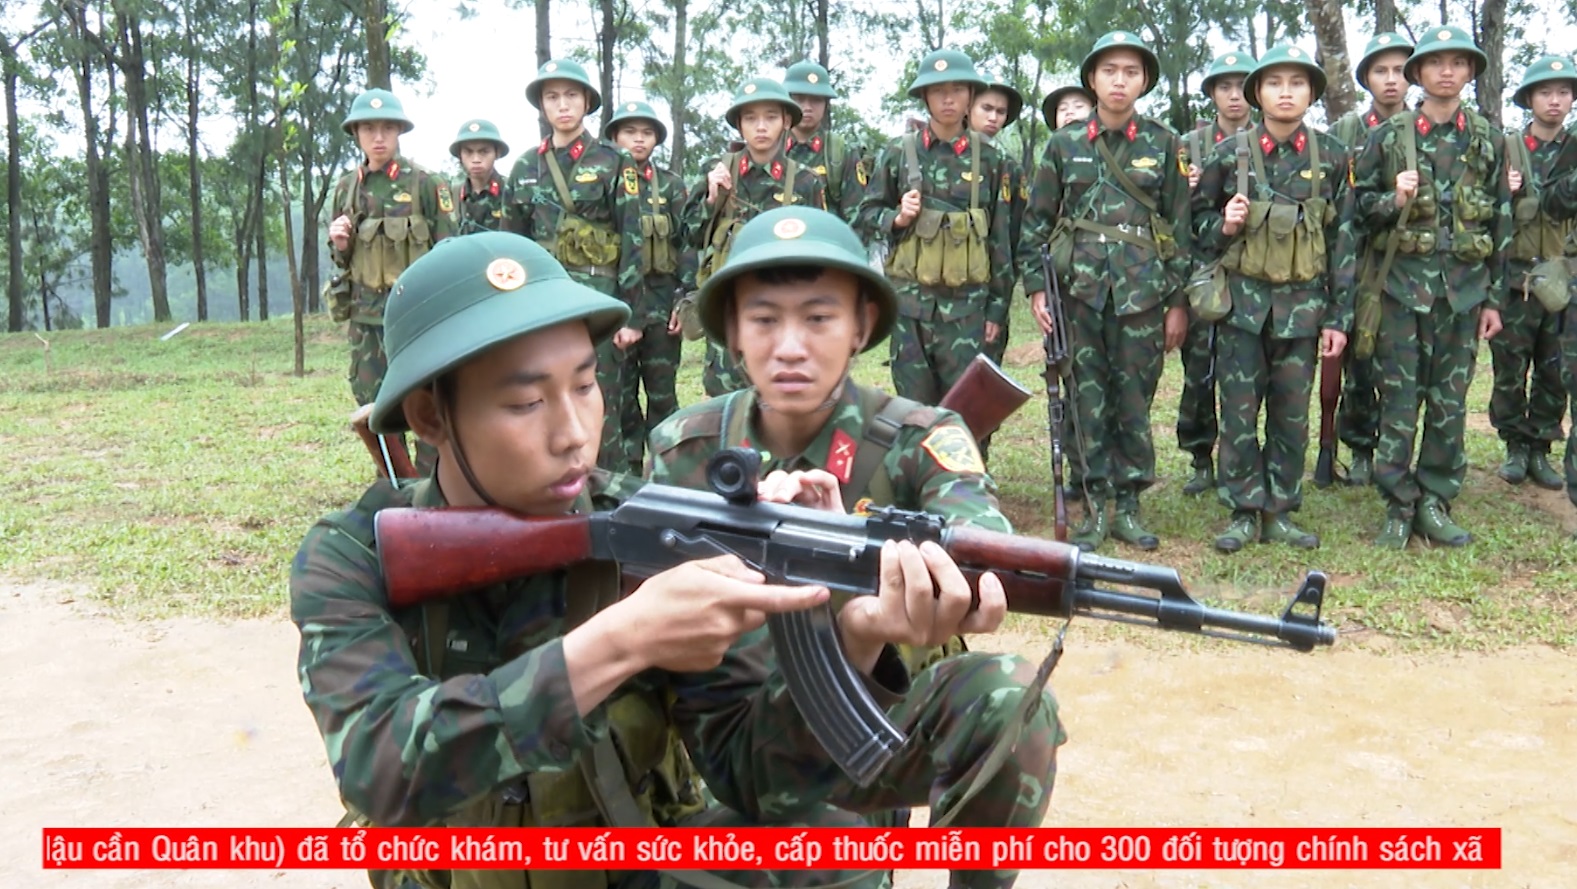 TRUYỀN HÌNH QUÂN KHU 3: Trung đoàn 43 chú trọng nâng cao chất lượng huấn luyện chiến sỹ mới